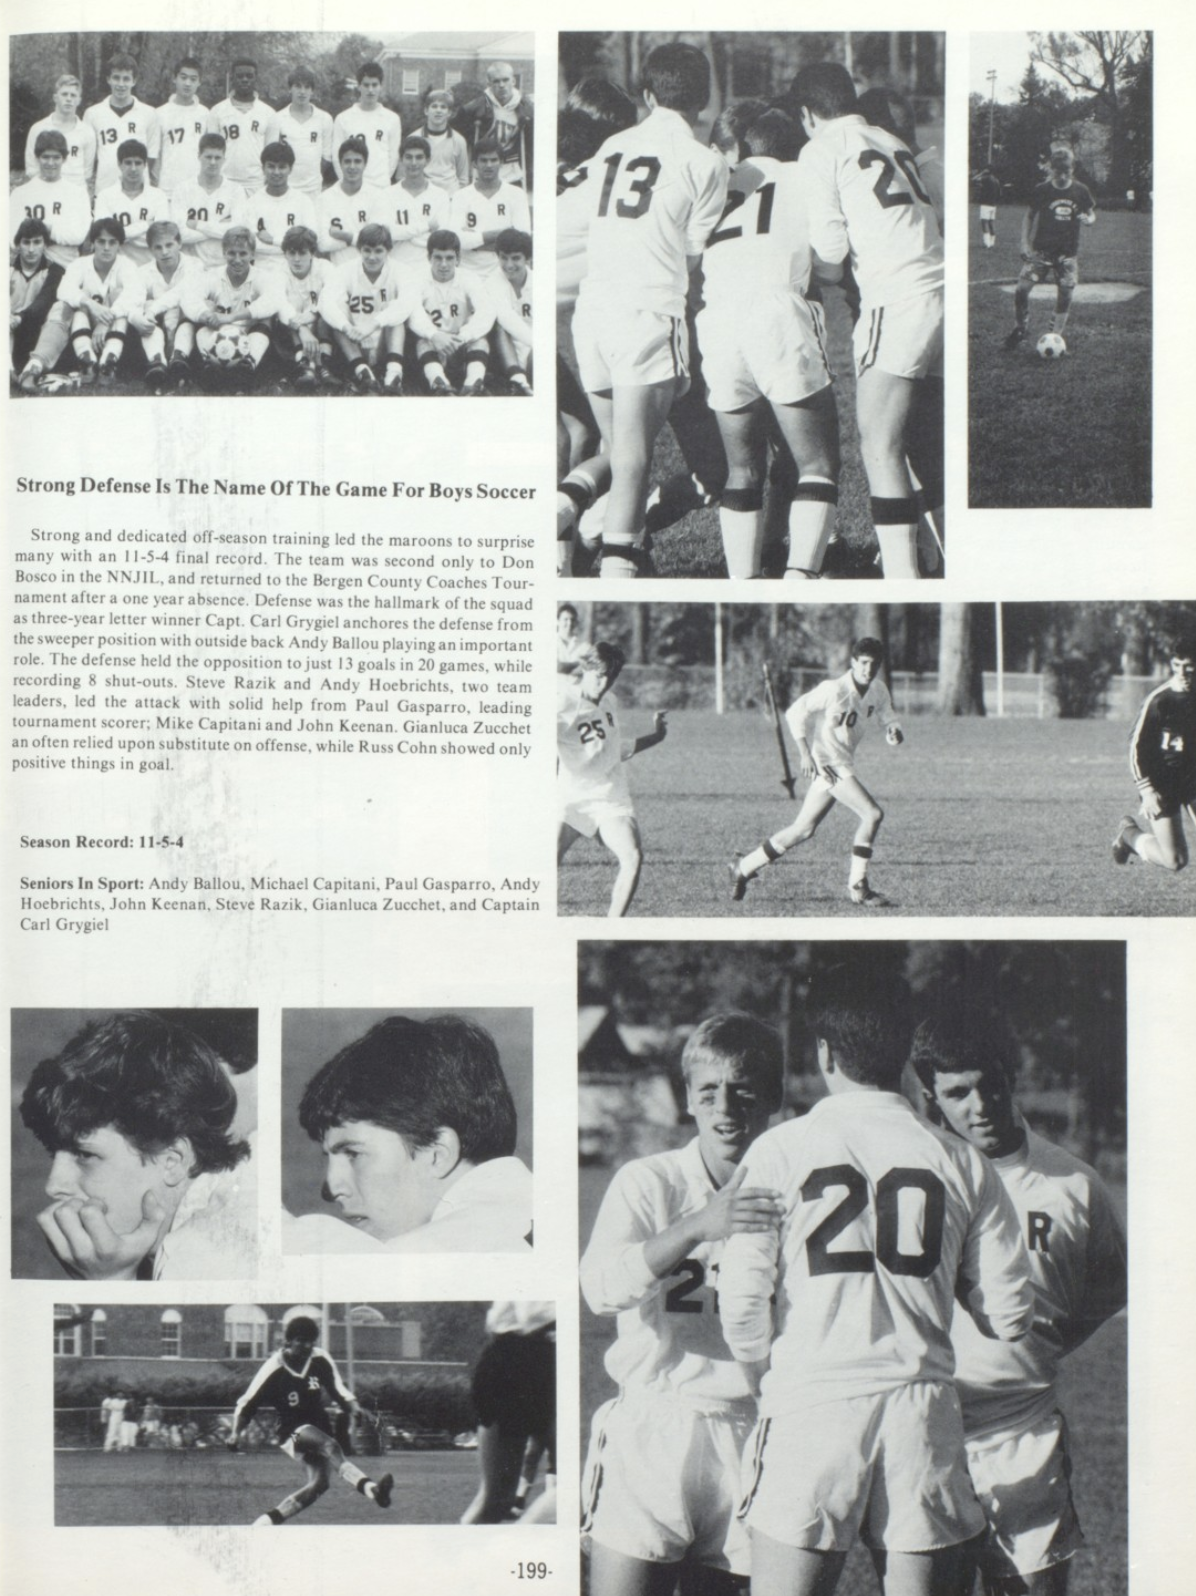 1986 Boys’ Soccer Team